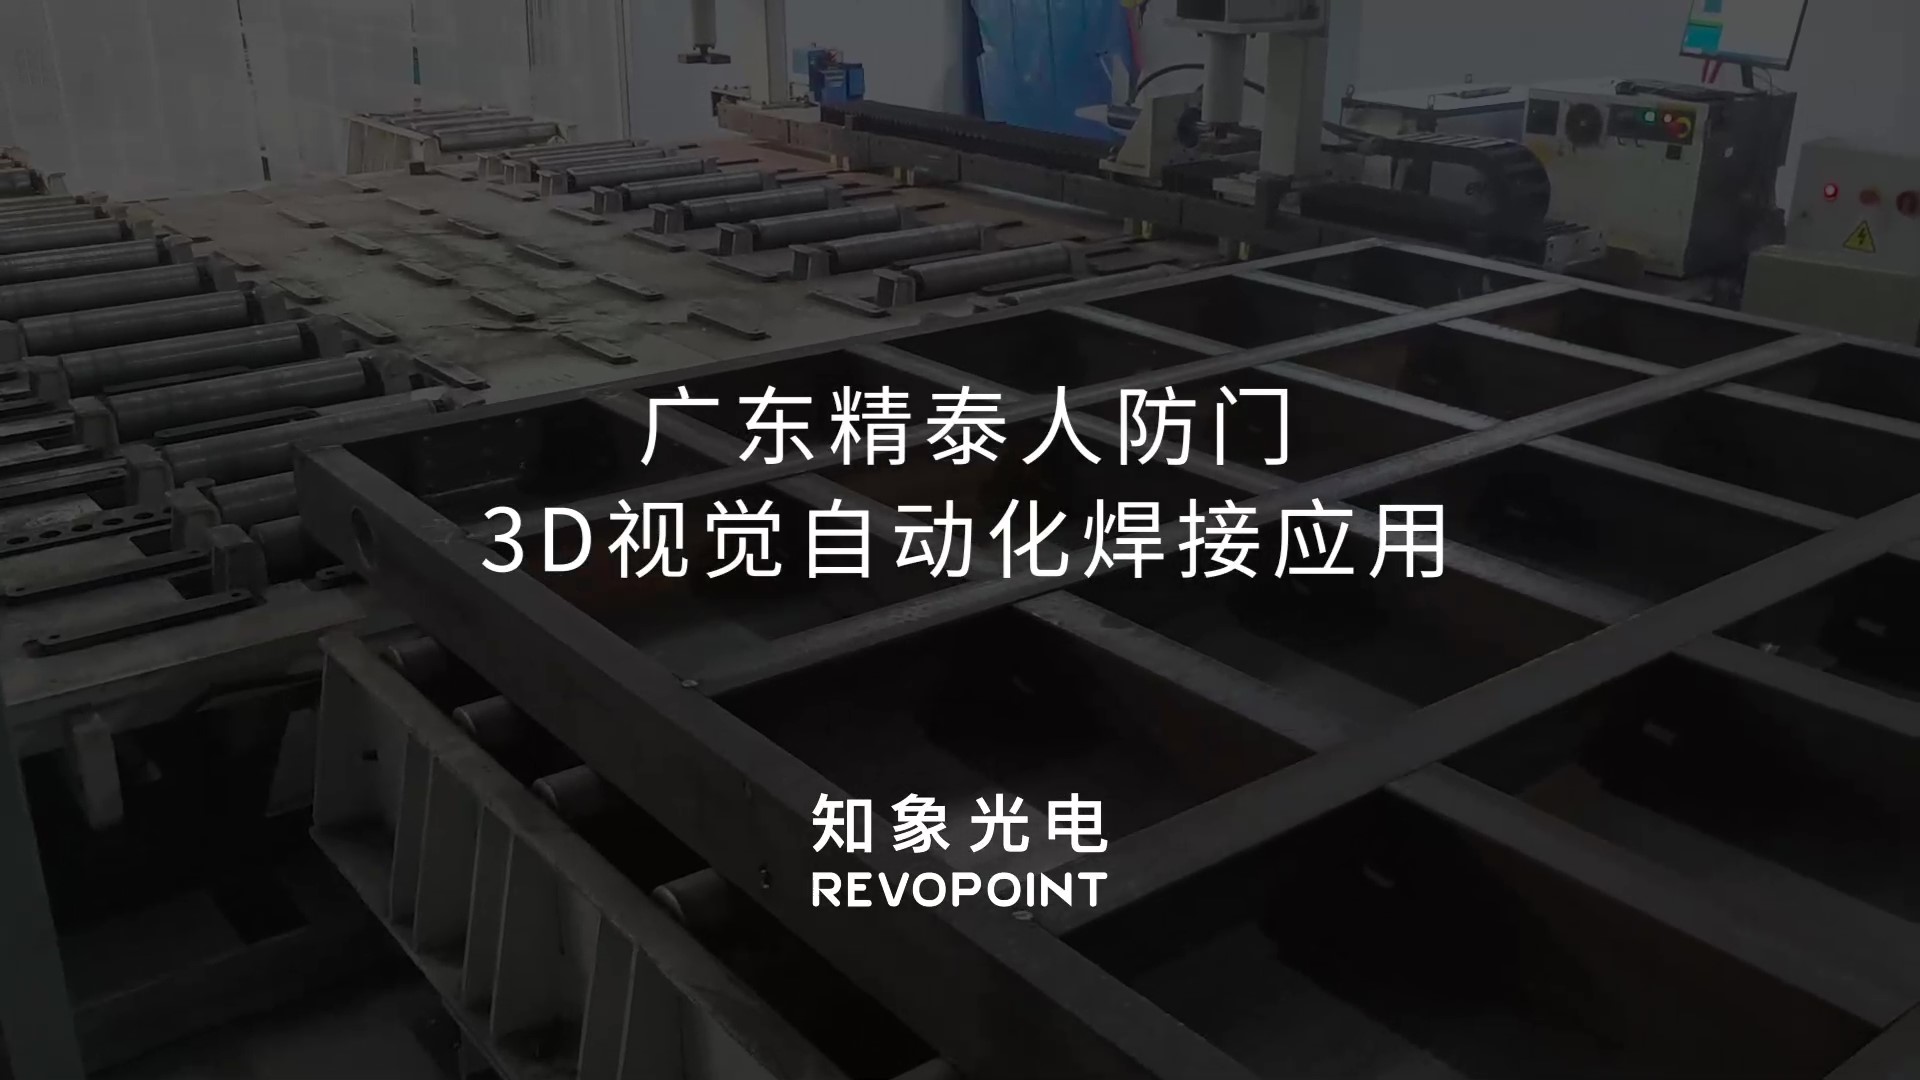 3D视觉人防门自动化焊接应用